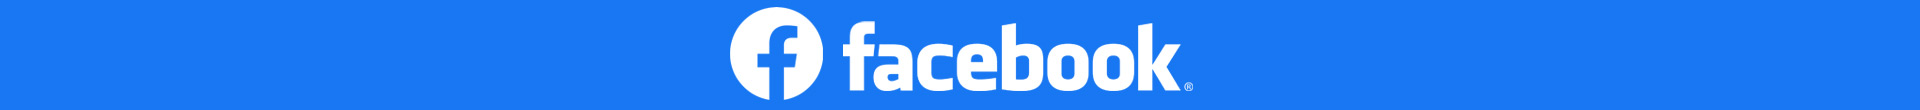 Agence de création de filtres en réalité augmentée pour Facebook